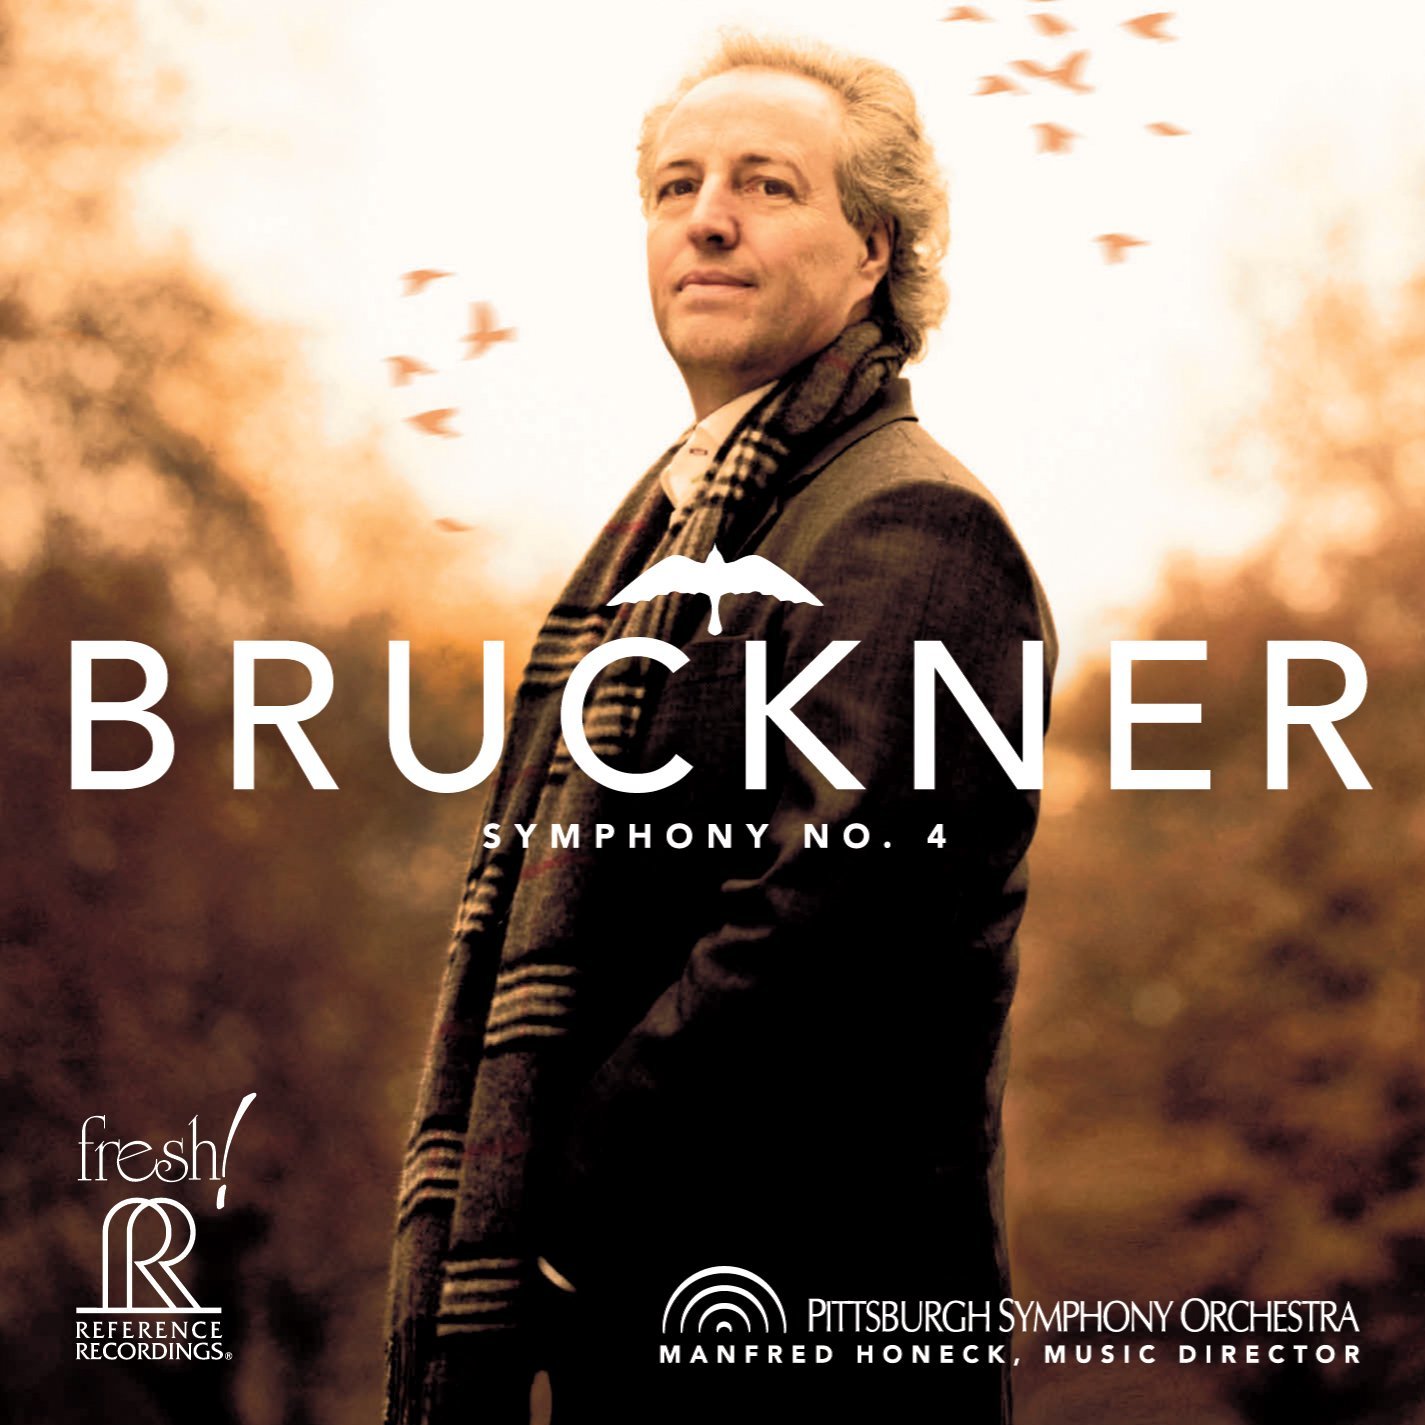 Bruckner Front Cover.jpg